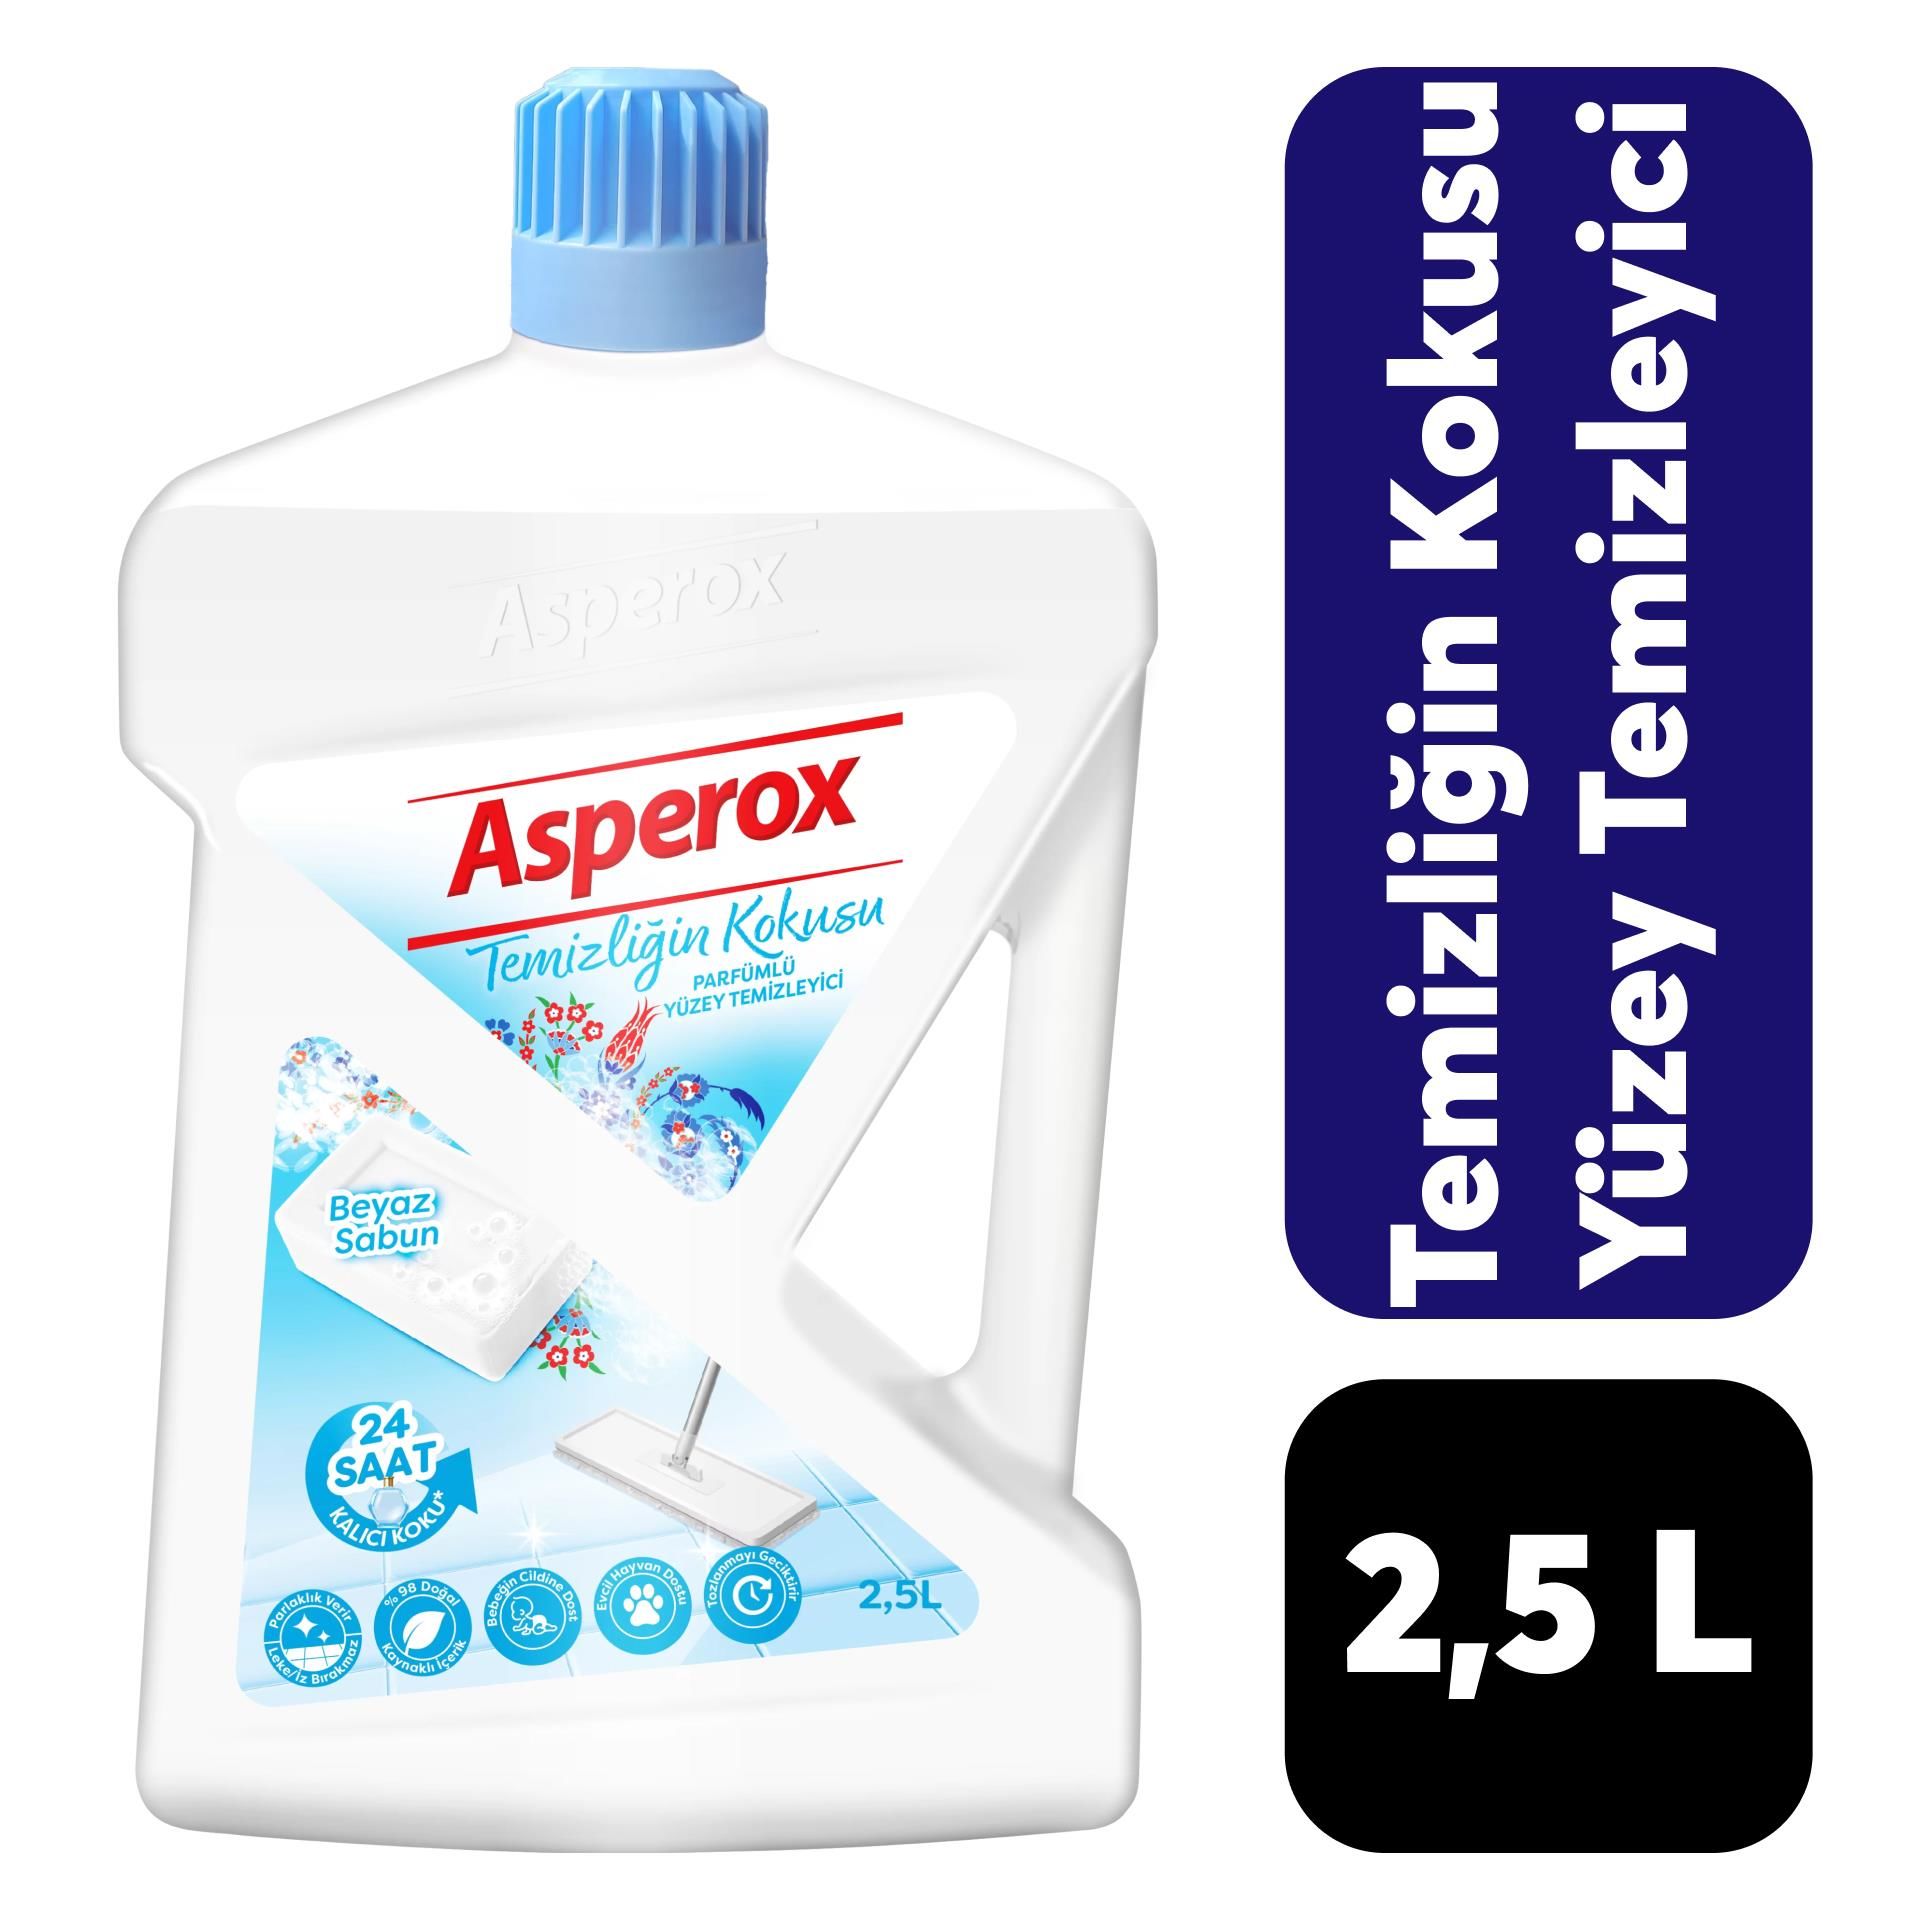 Asperox Yüzey Temizleyici 2,5 L Temizliğin Kokusu